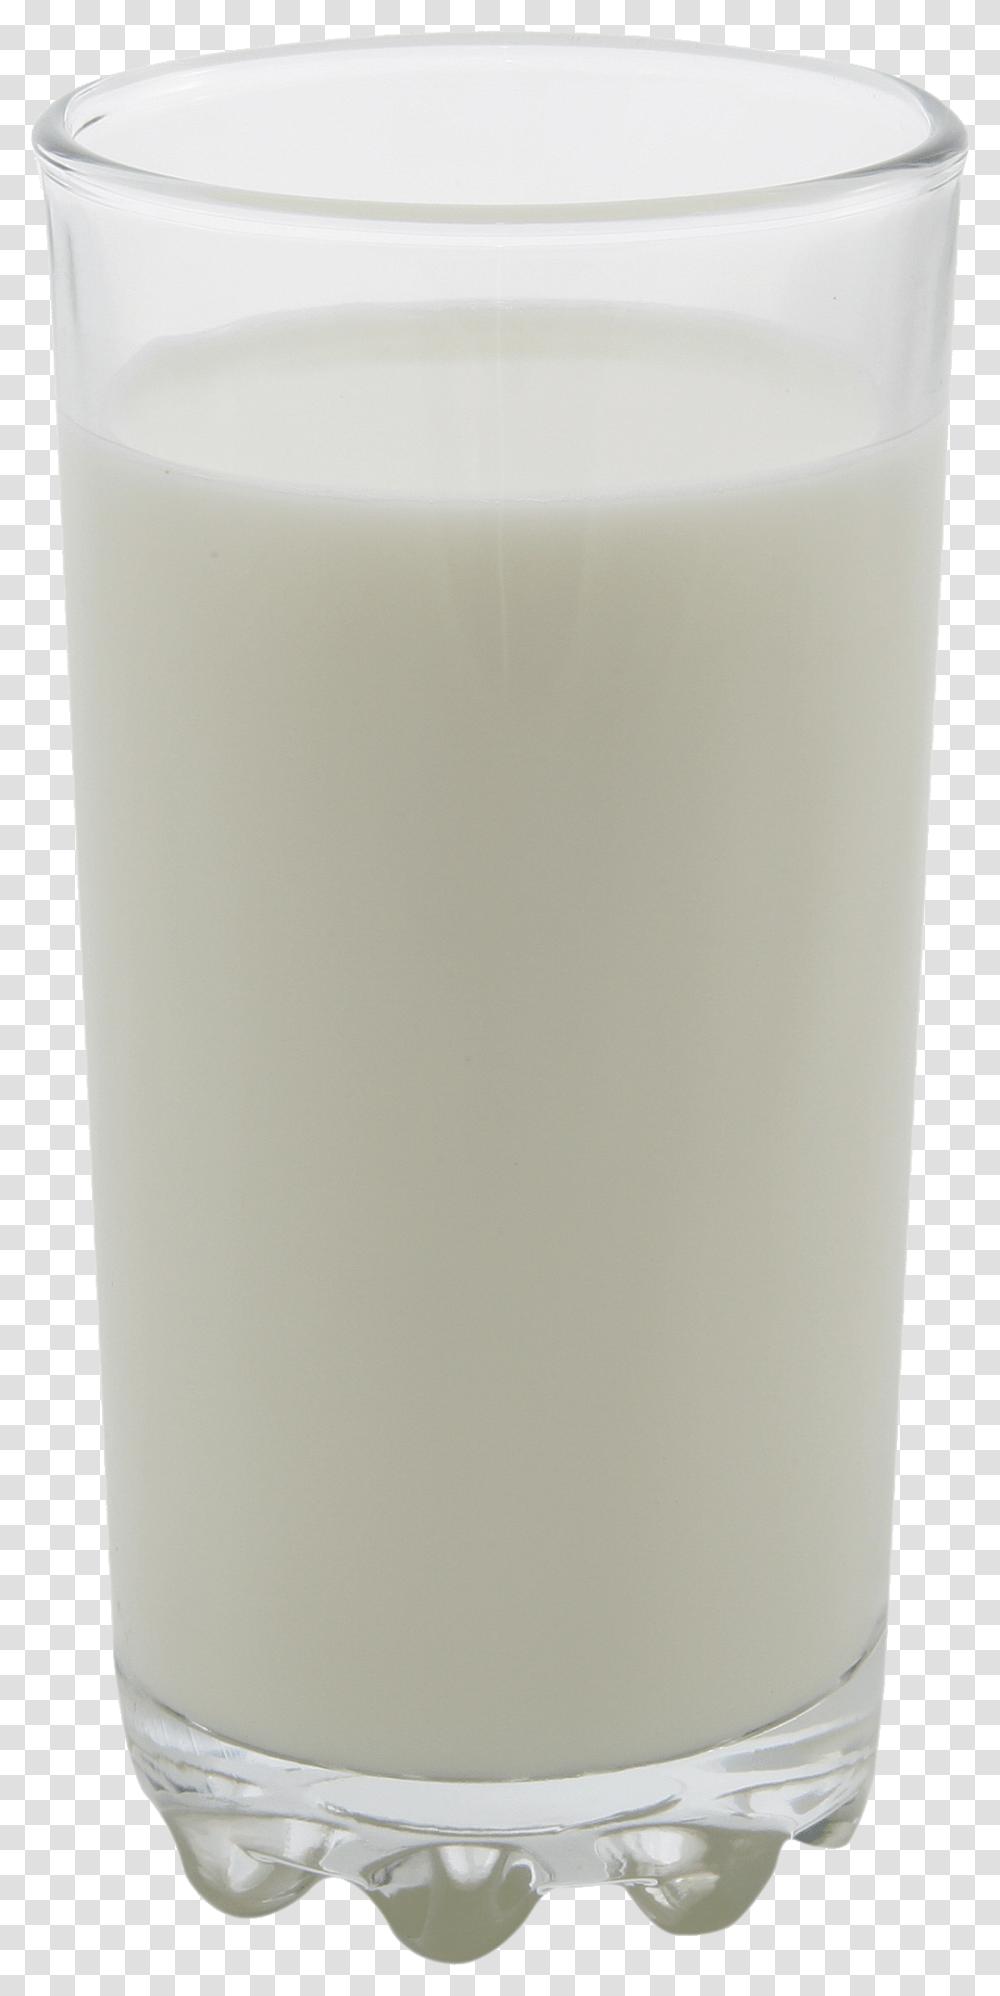 Milk Image Glass Of Milk, Beverage, Drink, Cylinder, Candle Transparent Png